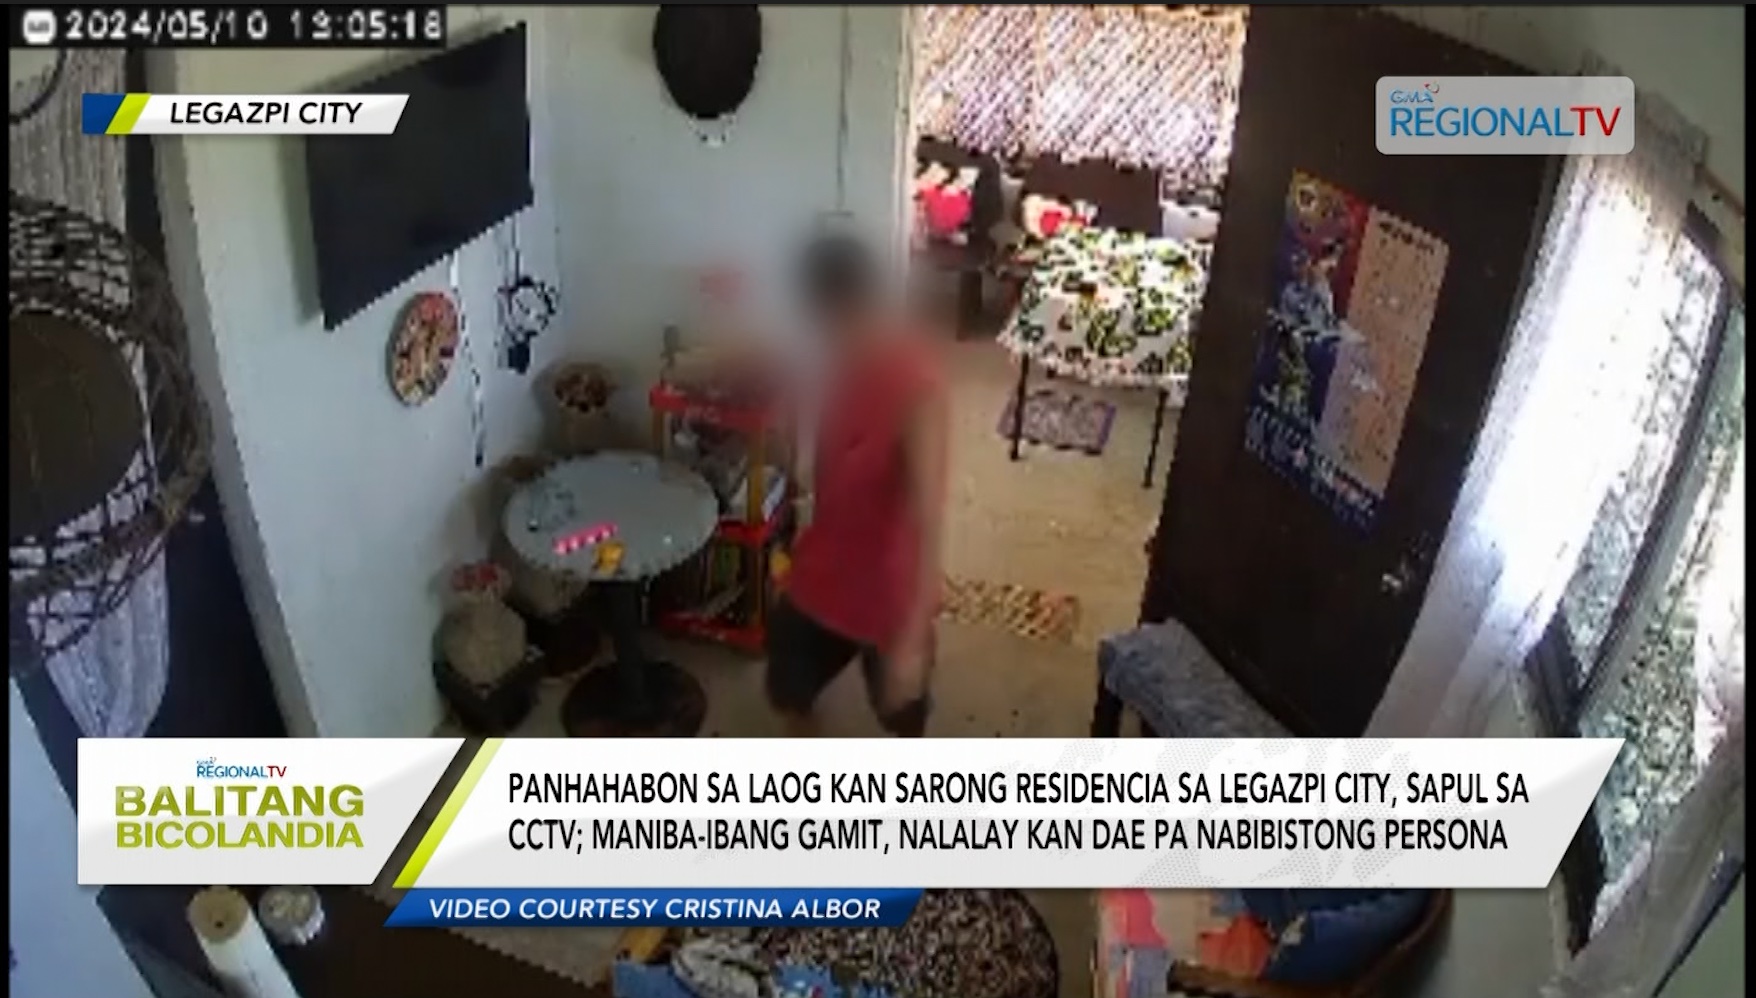 Panhahabon sa laog kan sarong residencia sa Legazpi City, sapul sa CCTV